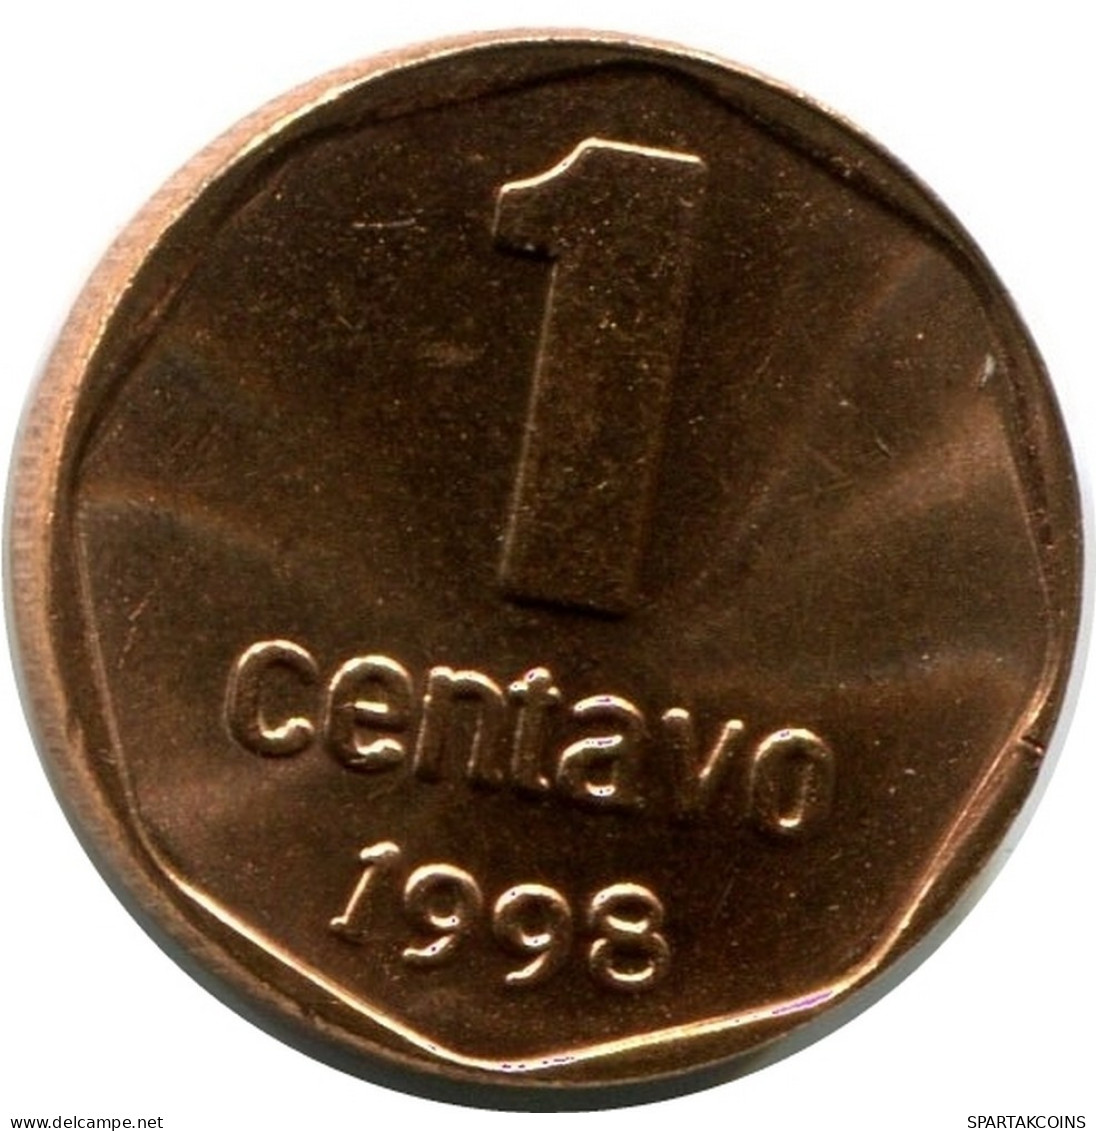 1 CENTAVO 1998 ARGENTINIEN ARGENTINA Münze UNC #M10082.D.A - Argentine